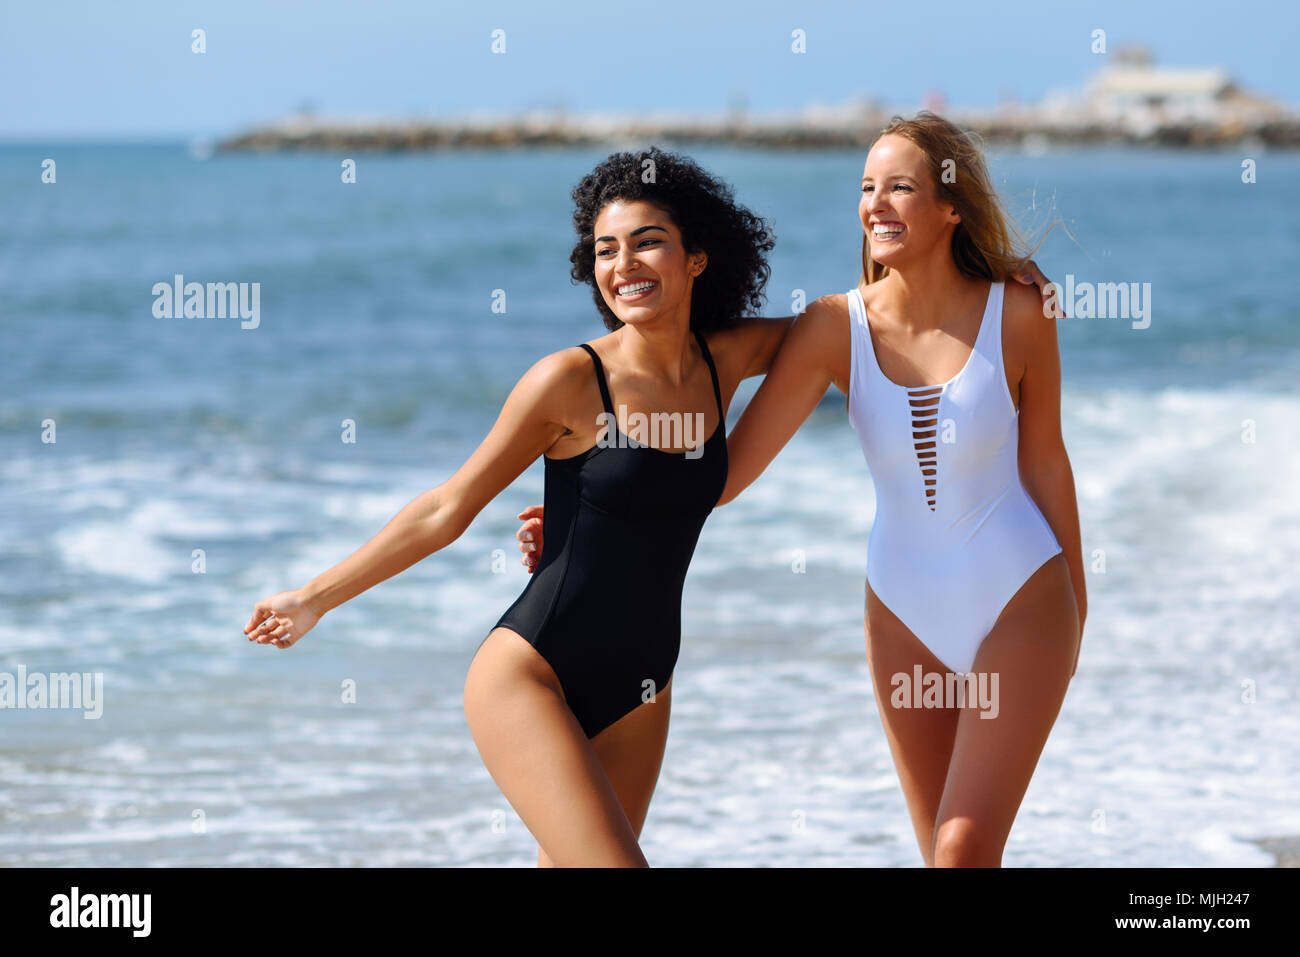 Dos mujeres jóvenes con bellos cuerpos en de baño en una playa tropical. Gracioso y caucásica árabe mujeres vistiendo trajes baño blanco y negro caminando al Fotografía de stock -